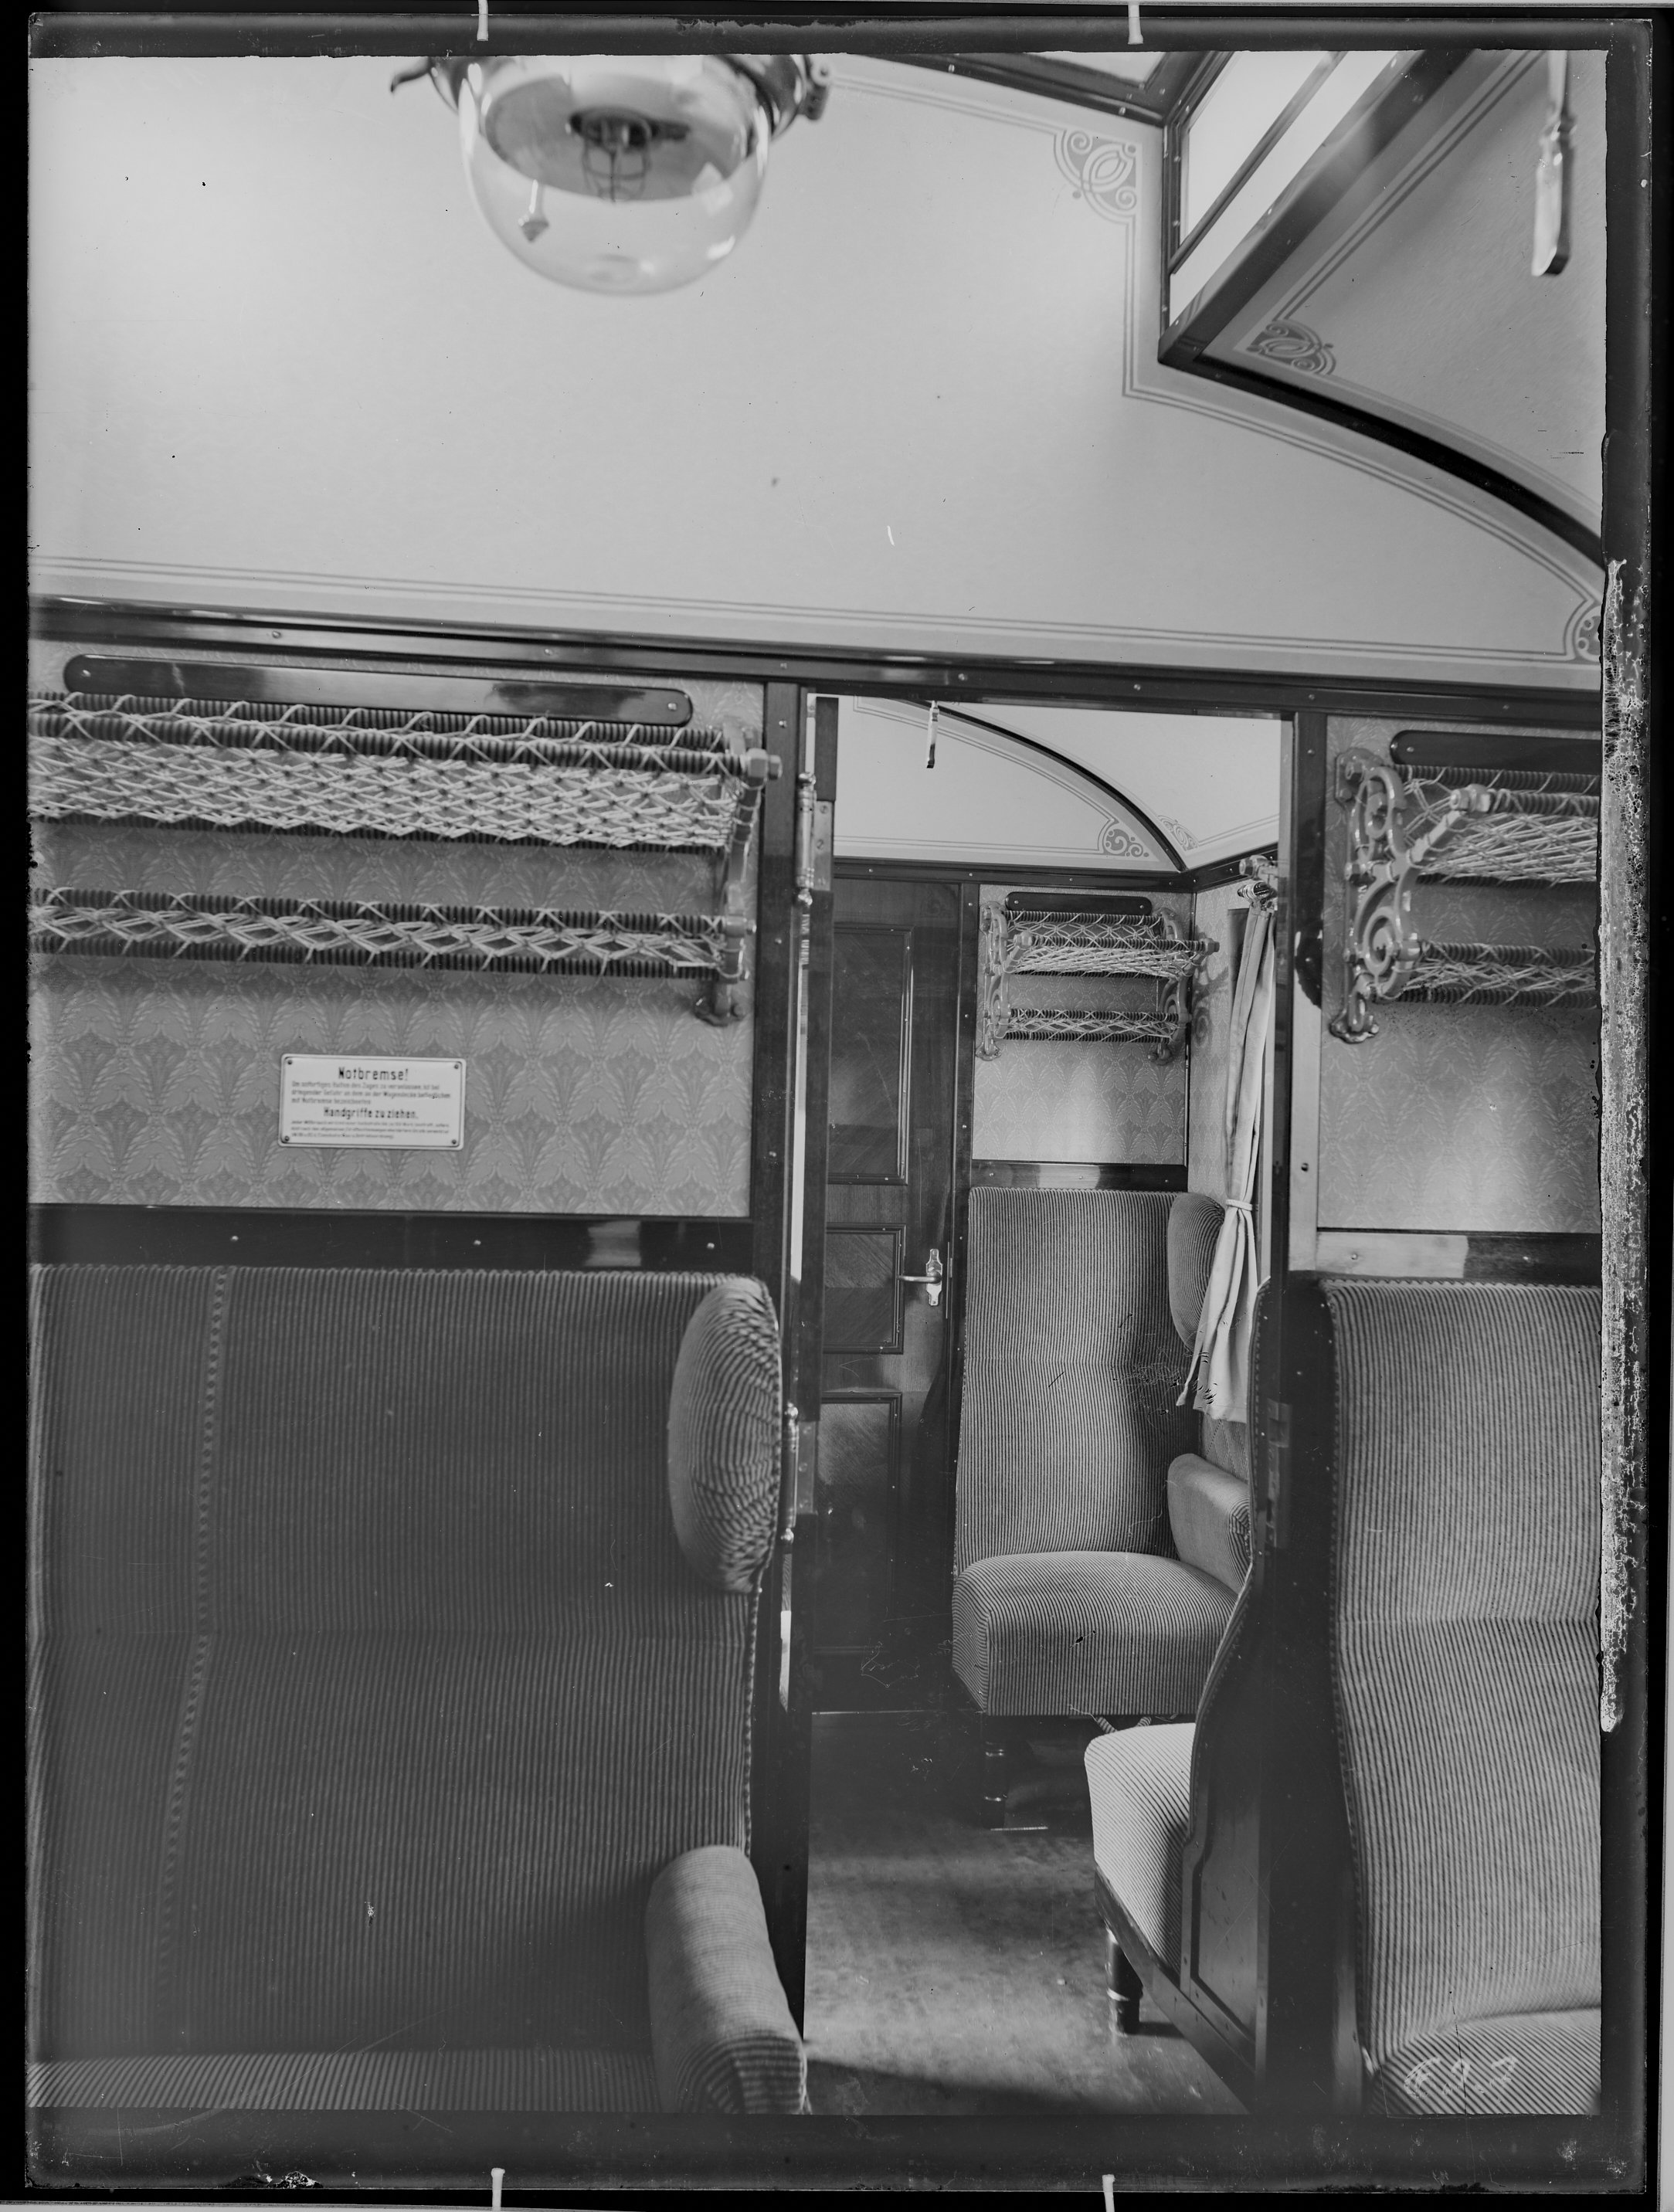 Fotografie: dreiachsiger Durchgangswagen zweiter/dritter Klasse, Gattung BC3i (Innenansicht, Spurweite: 1435 mm), Abteil zweiter Klasse, 1913. Stolper (Verkehrsmuseum Dresden CC BY-NC-SA)